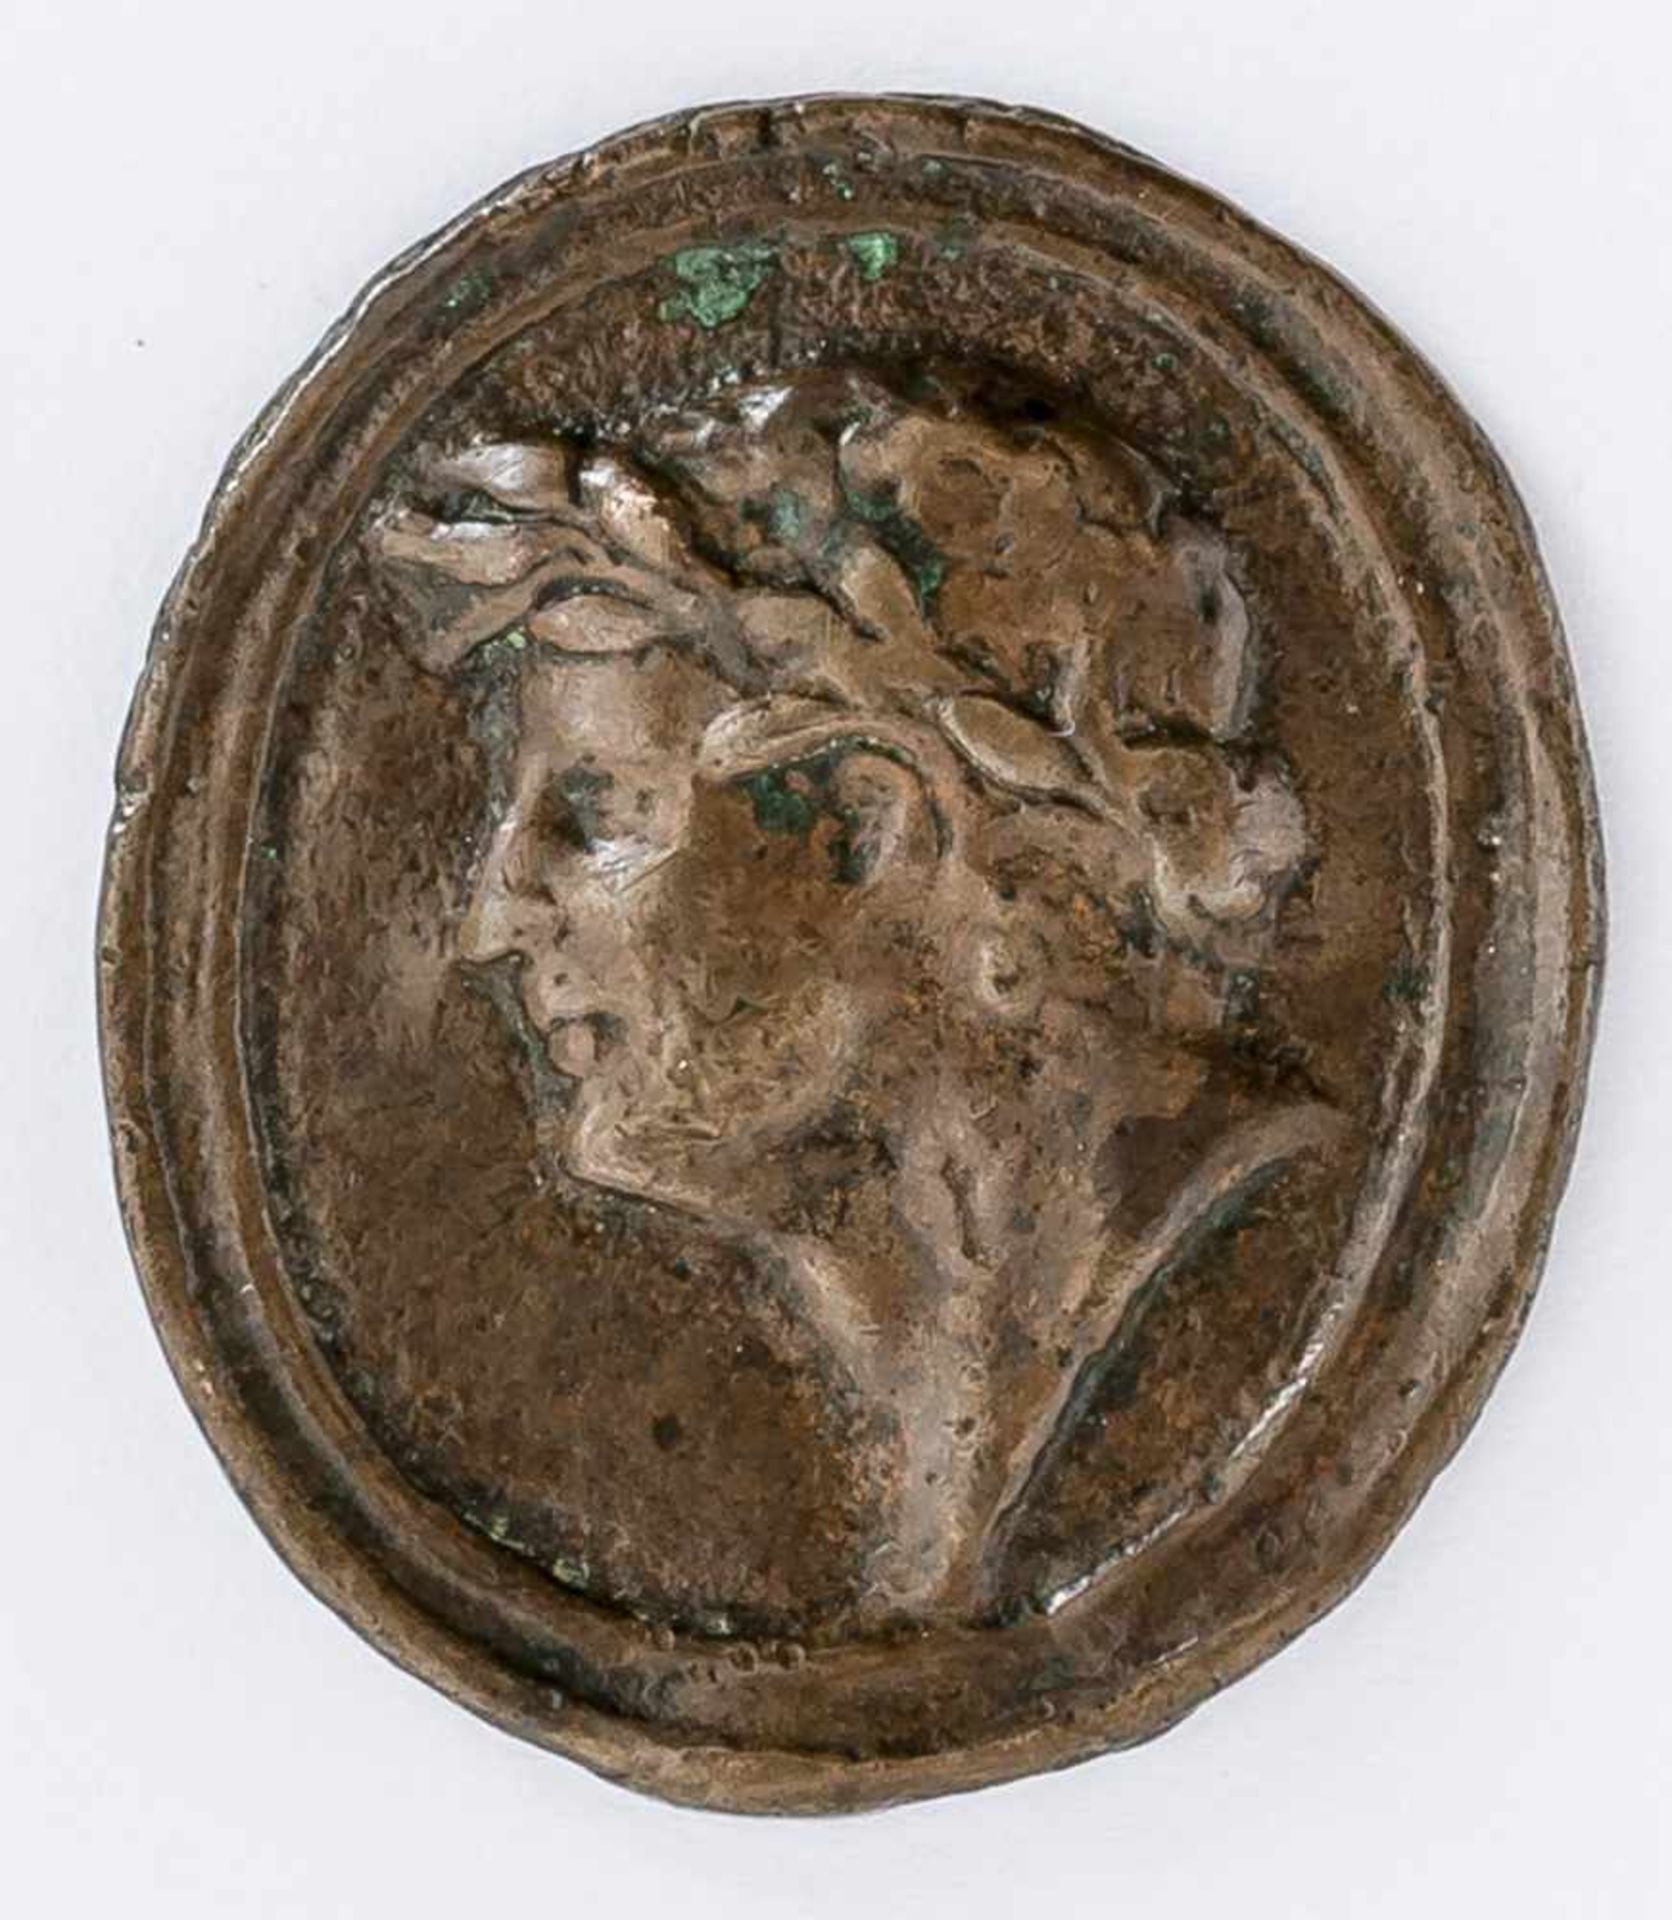 Caesar(?) Italienische Plakette, wohl 16. / 17. Jh. 3,7 x 3 cm Caesar (?), Italian plaquette,